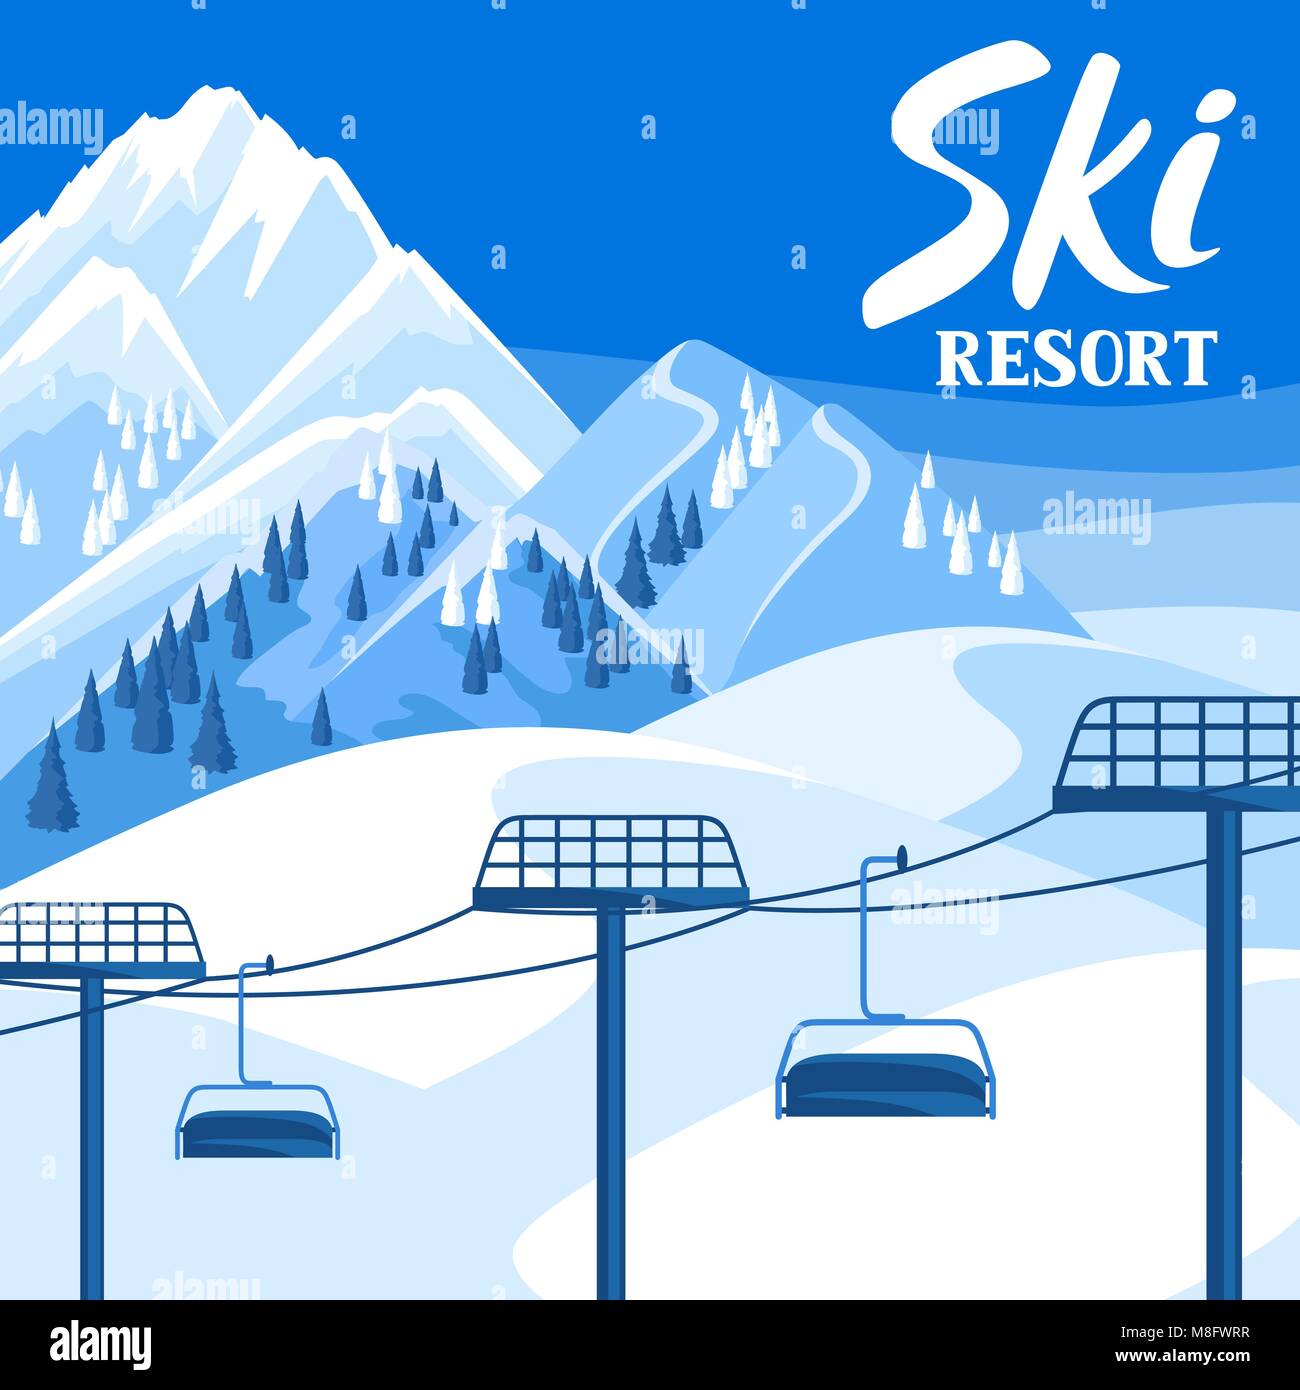 Station de ski d'hiver illustration. Beau paysage avec corde façon, les montagnes enneigées et des forêts de sapin Illustration de Vecteur